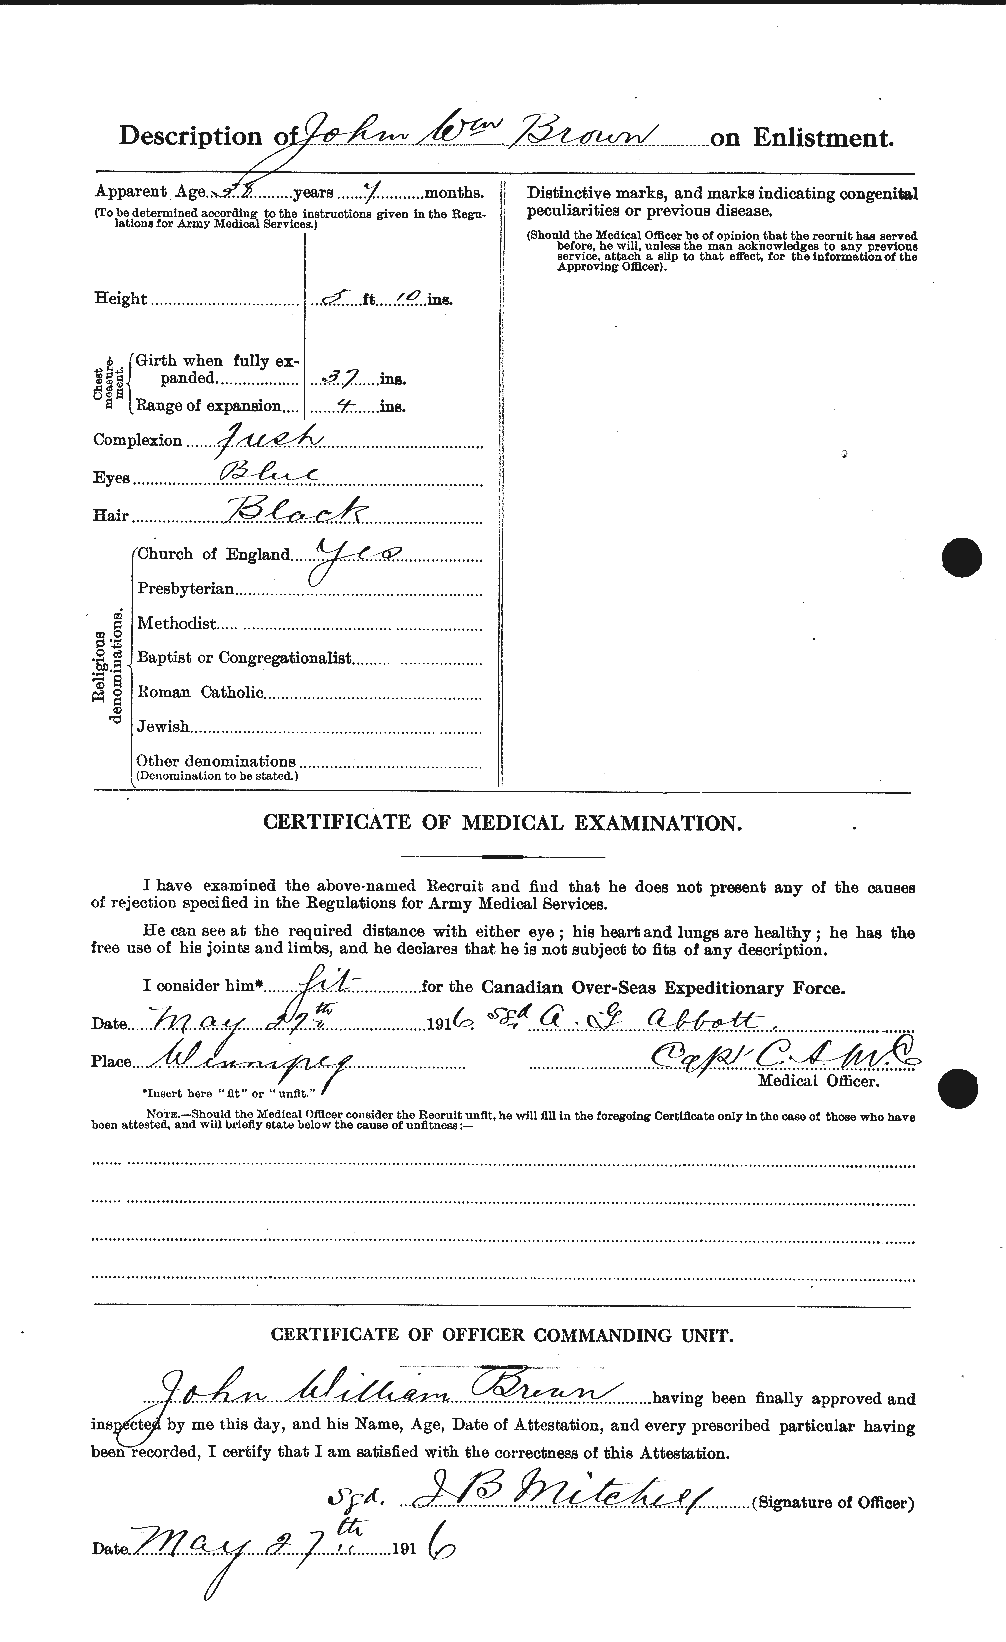 Dossiers du Personnel de la Première Guerre mondiale - CEC 265900b